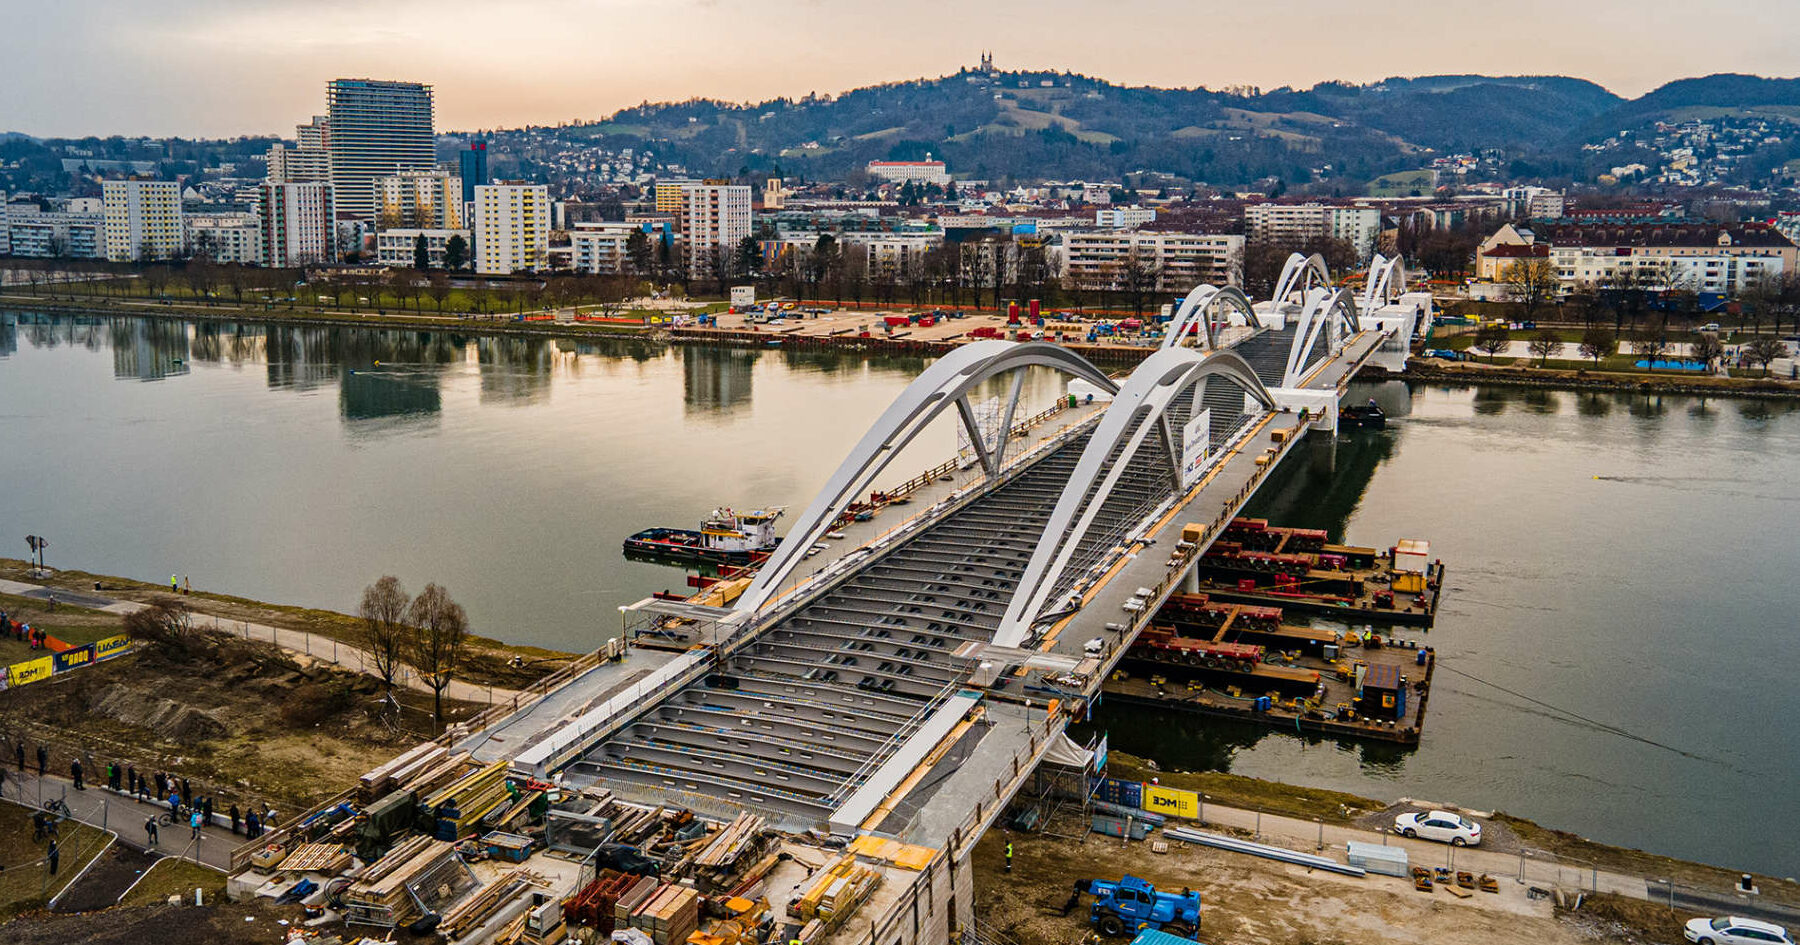 Noch ist die neue Donaubrücke öffentlich nicht begeh- und befahrbar, aber das soll im Herbst der Fall sein. Mittelfristig werden auch zwei Stadtbahnlinien die Donau an dieser Stelle queren, Land und Bund haben dafür jetzt die Weichen gestellt.